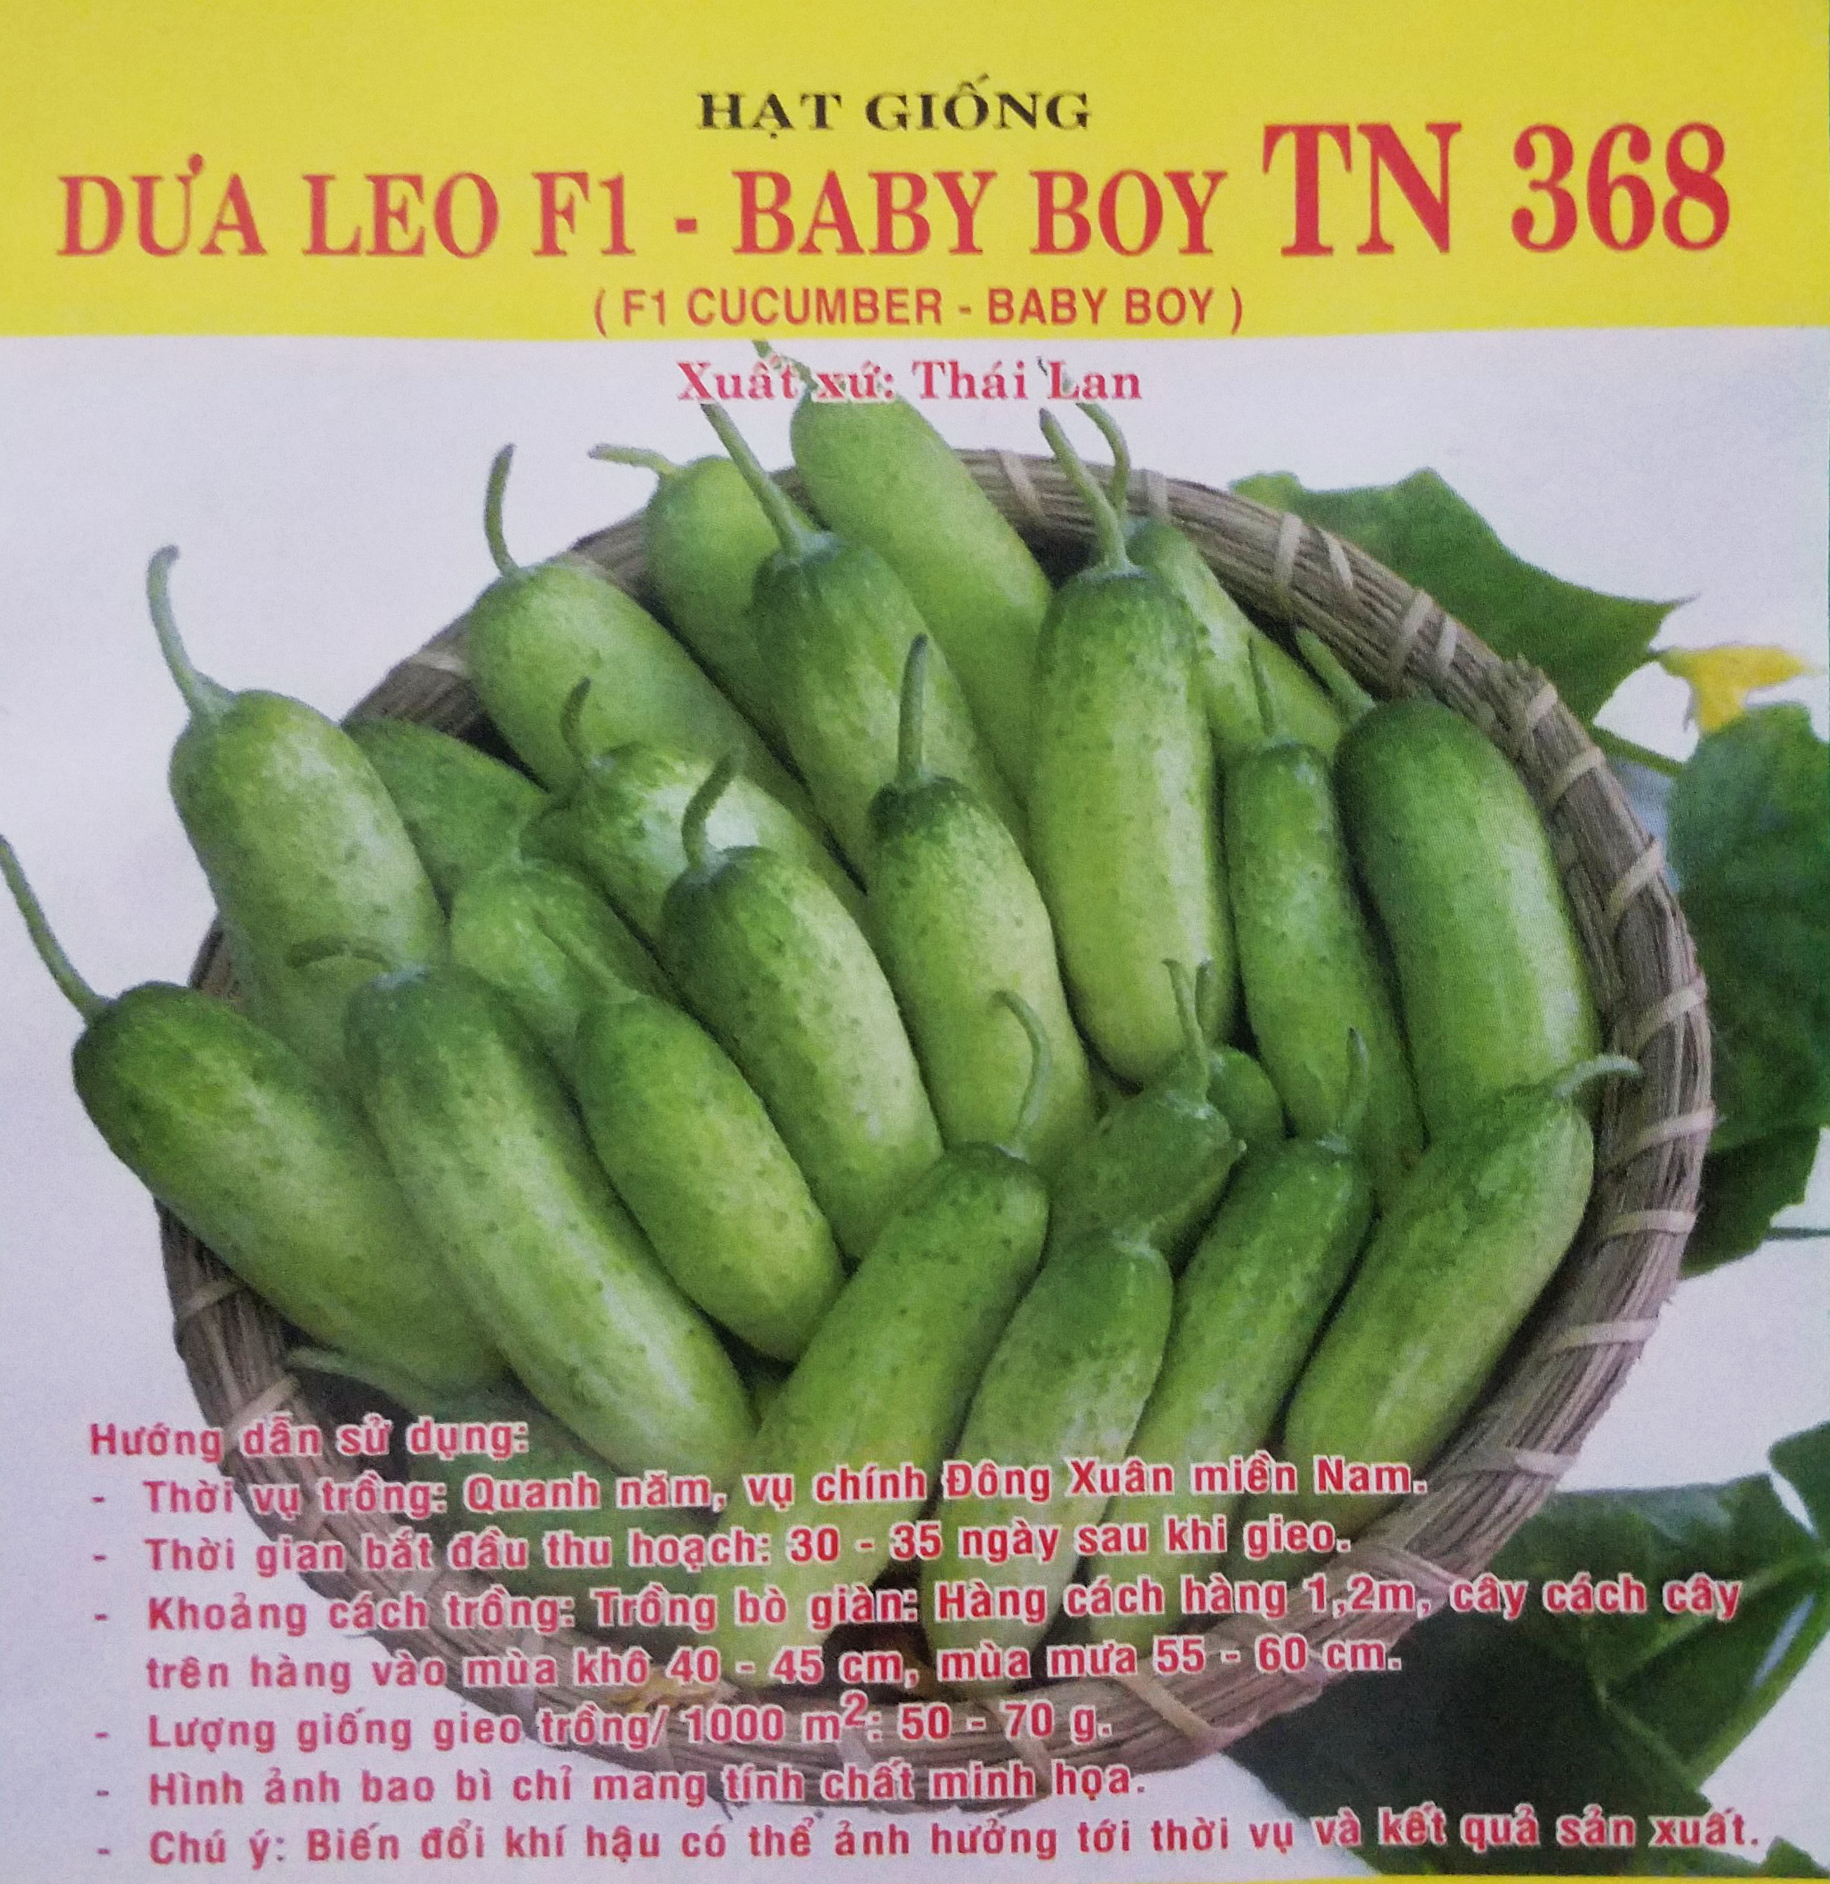 Hạt giống Dưa leo F1 - Baby Boy TN 368 (1g/gói) | F1 Cucumber Seeds